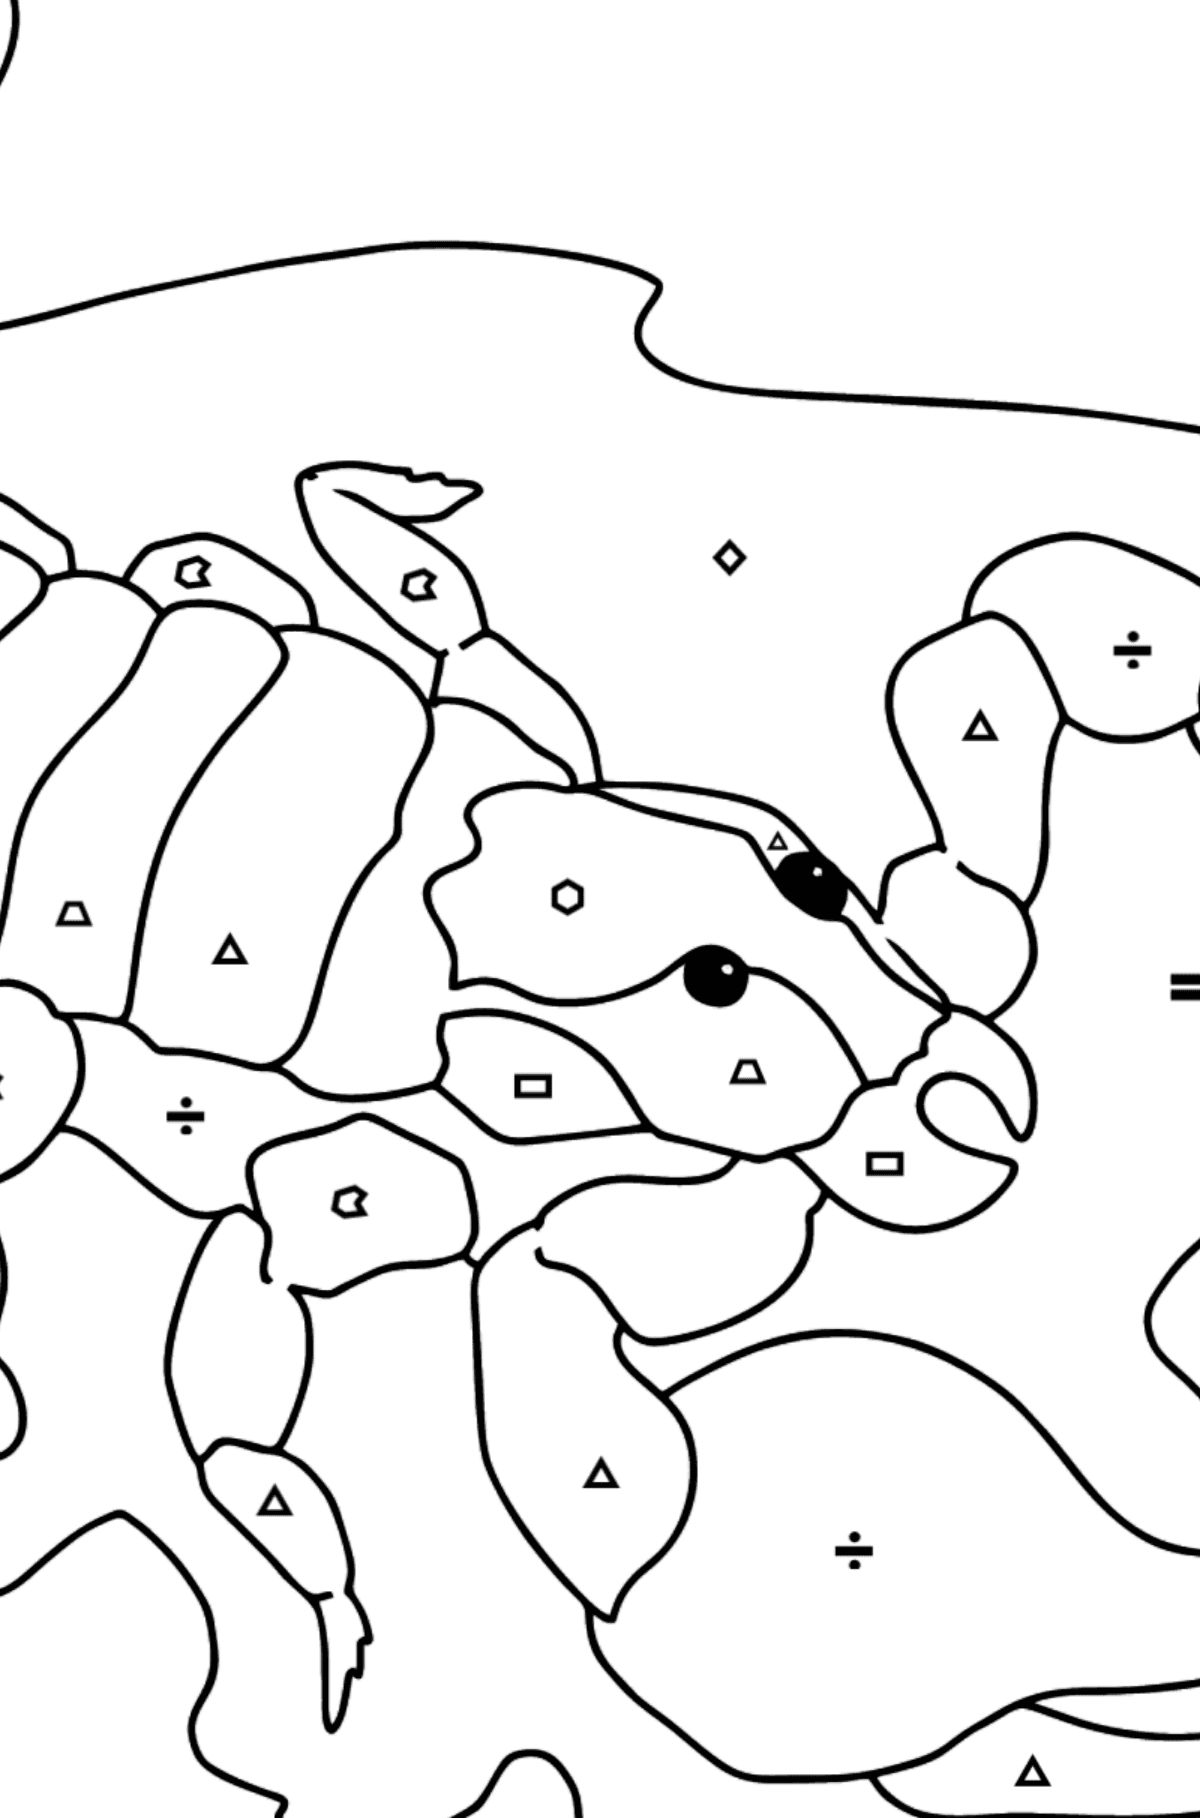 Tegning til farvning sort skorpion (vanskeligt) - farvelægning side efter symboler og geometriske former for børn